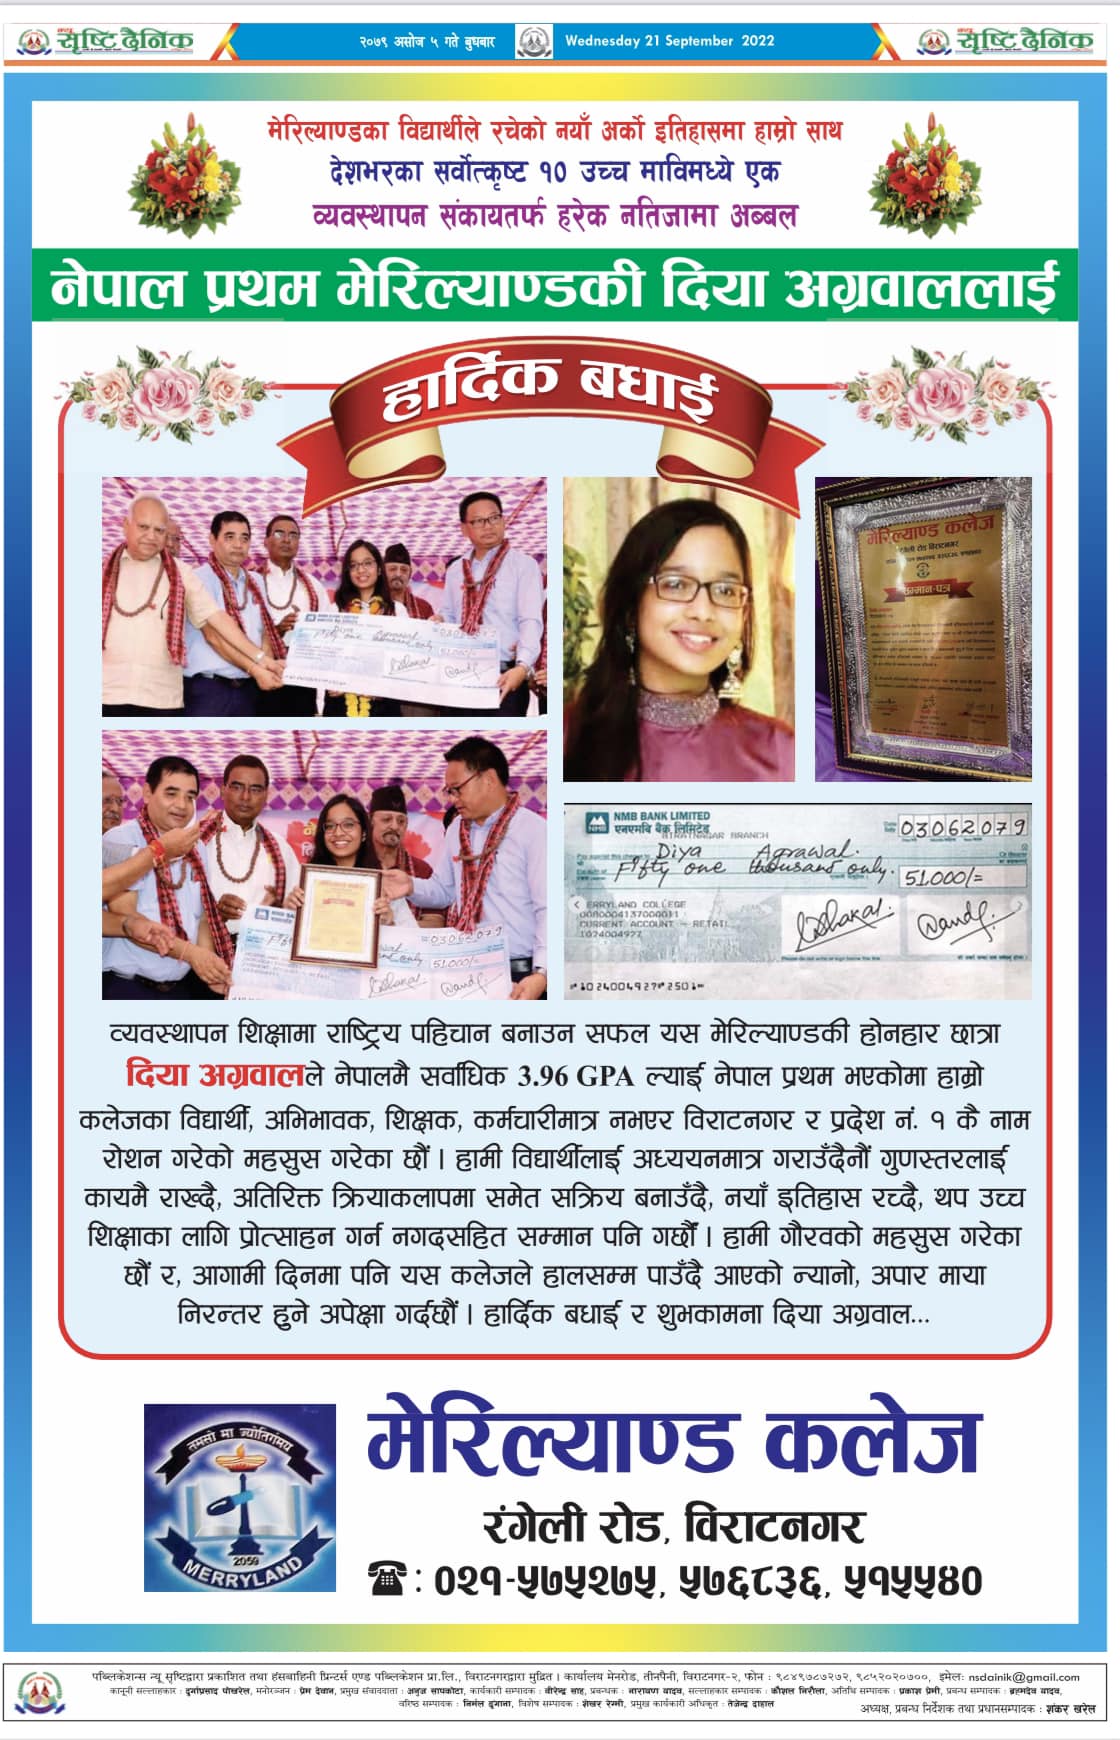 Achievements - Merryland College, Biratnagar